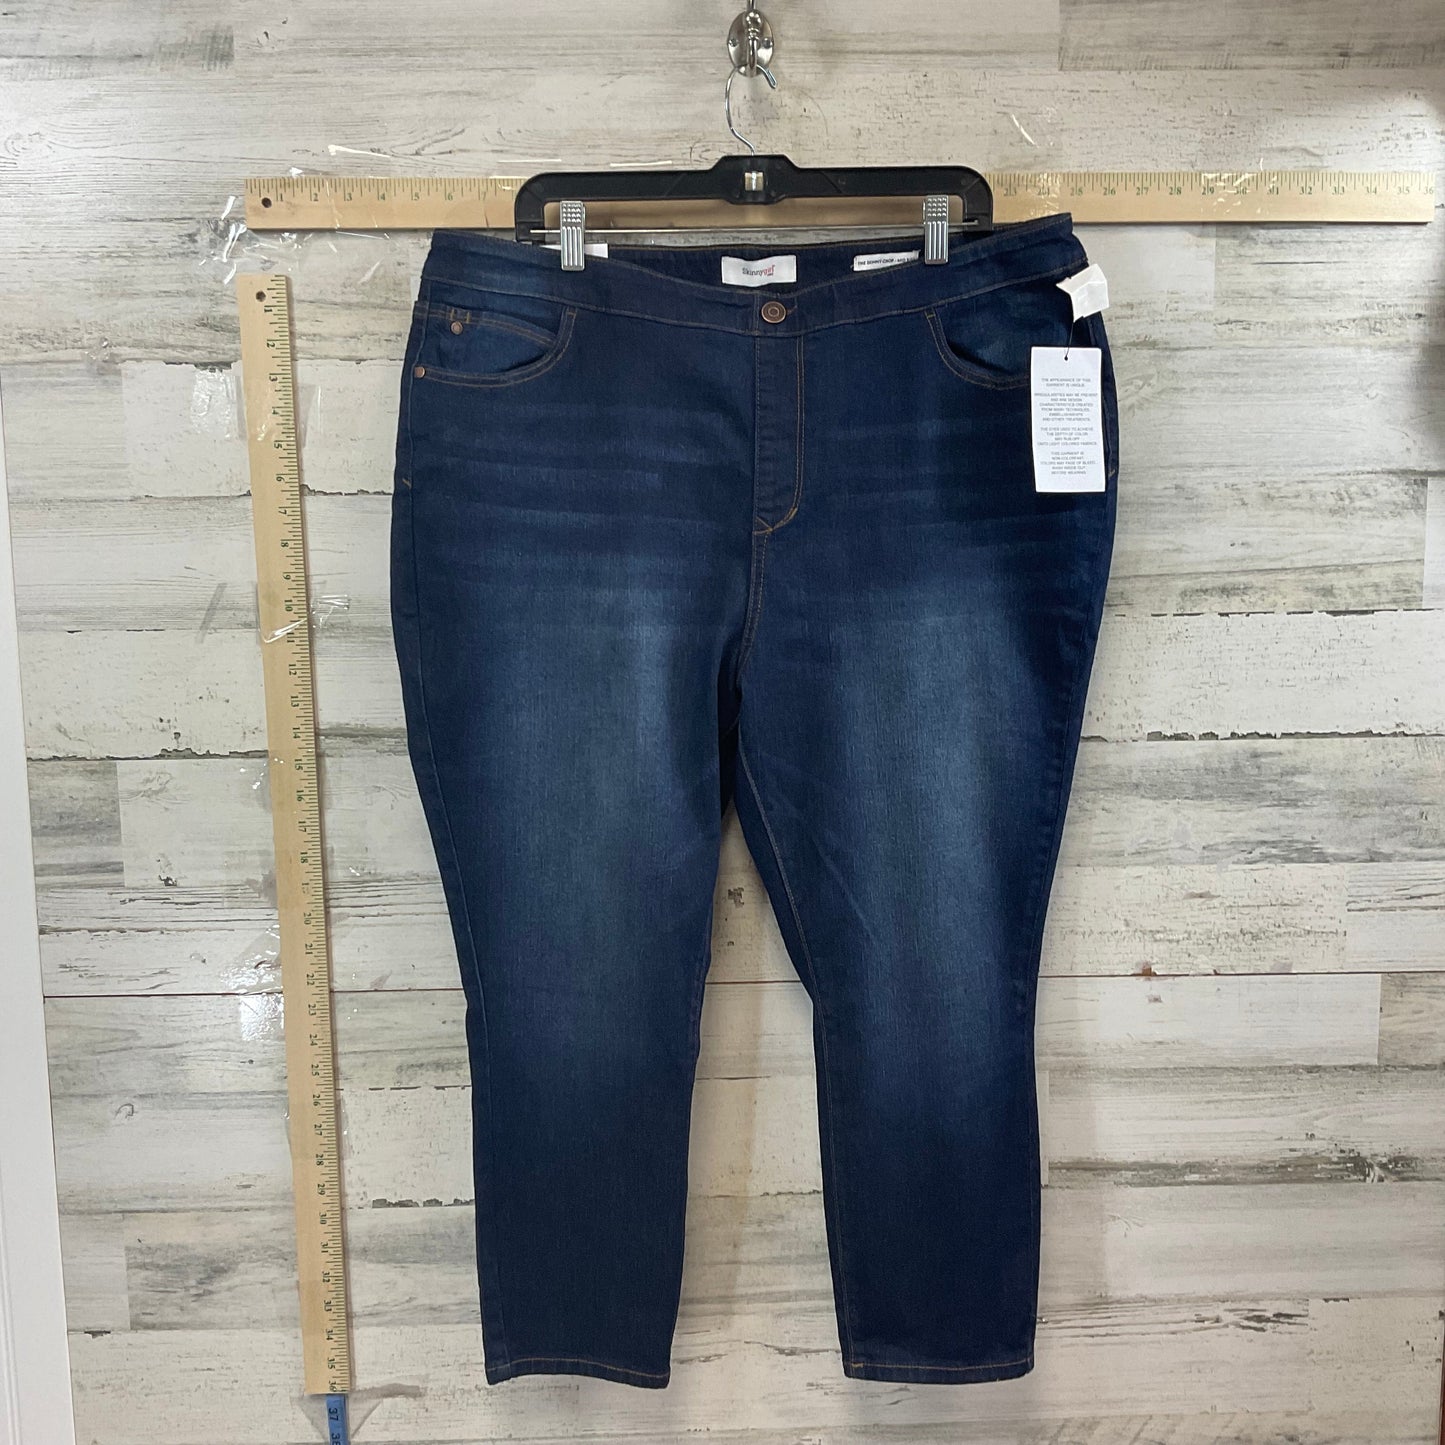 Blue Denim Jeans Cropped SKINNY GIRL, Size 20w